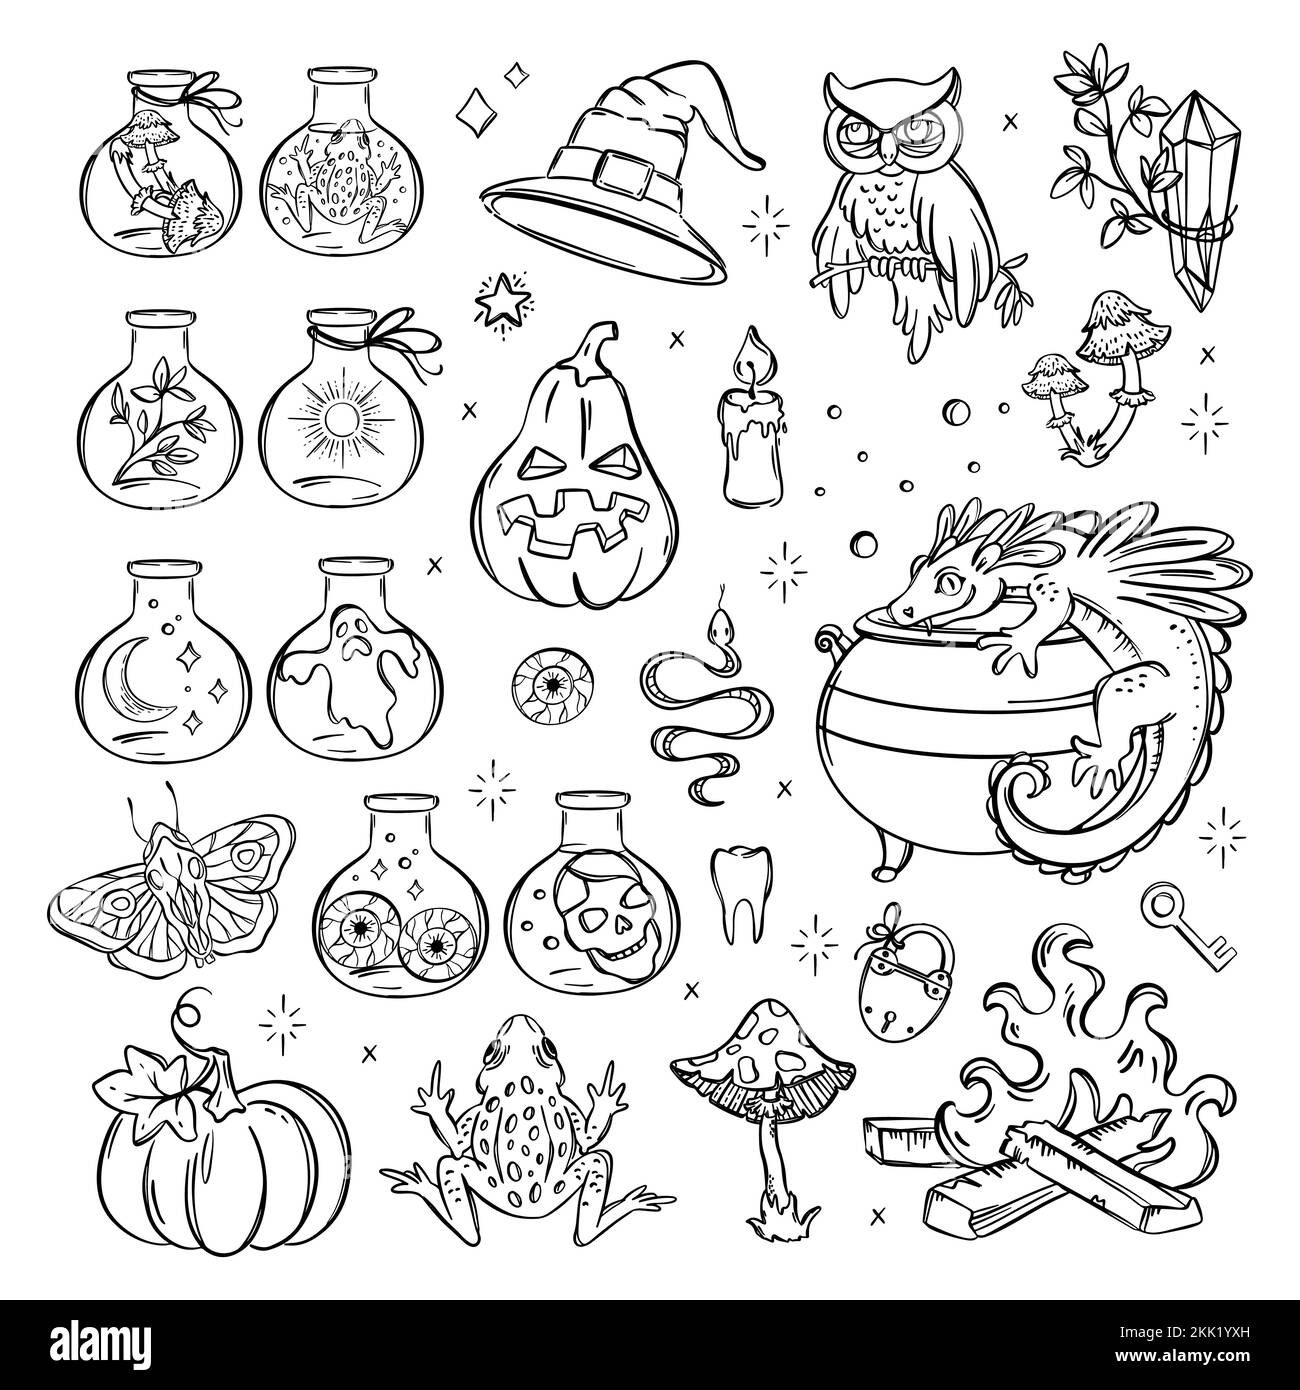 HALLOWEEN HEXEREI Monochrom Handgezeichnete Objekte Sketch Alchemic Astrologic und Occult Symbol Collection Magical Accessoires Cartoon Vector Illustra Stock Vektor